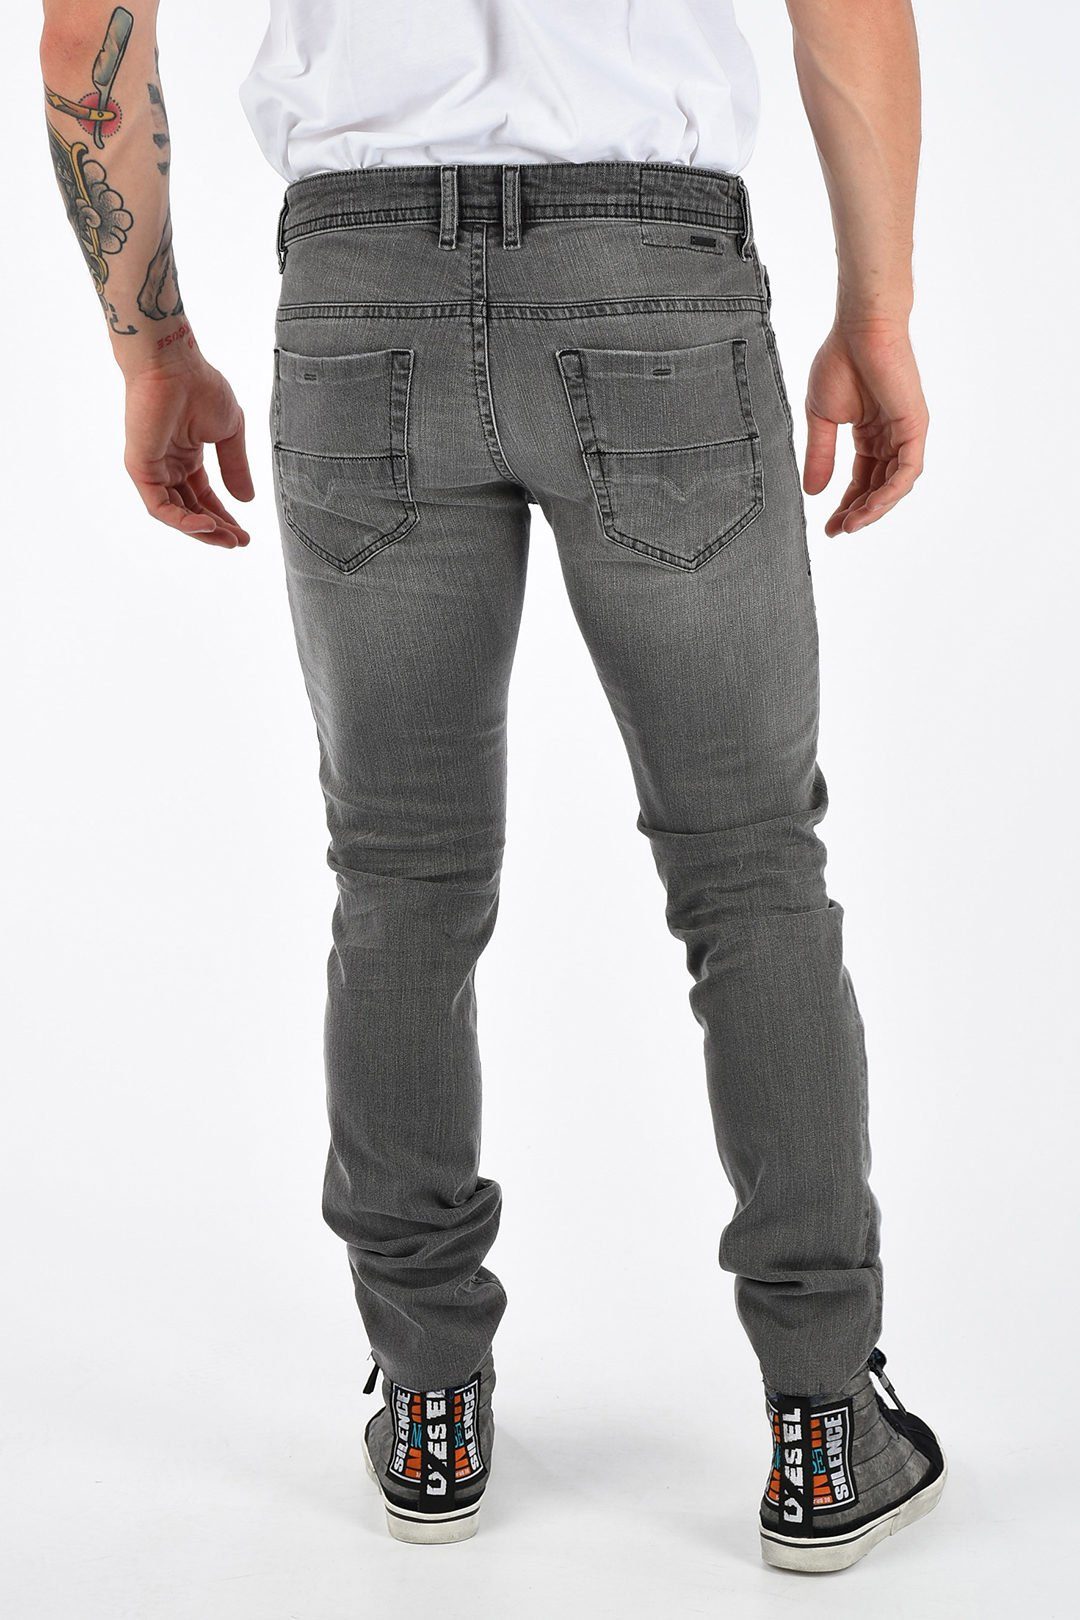 Diesel Slim-fit-Jeans Thommer Stretch, Röhrenjeans, 084JT Grau, Used-Look 5-Pocket-Style, Herren